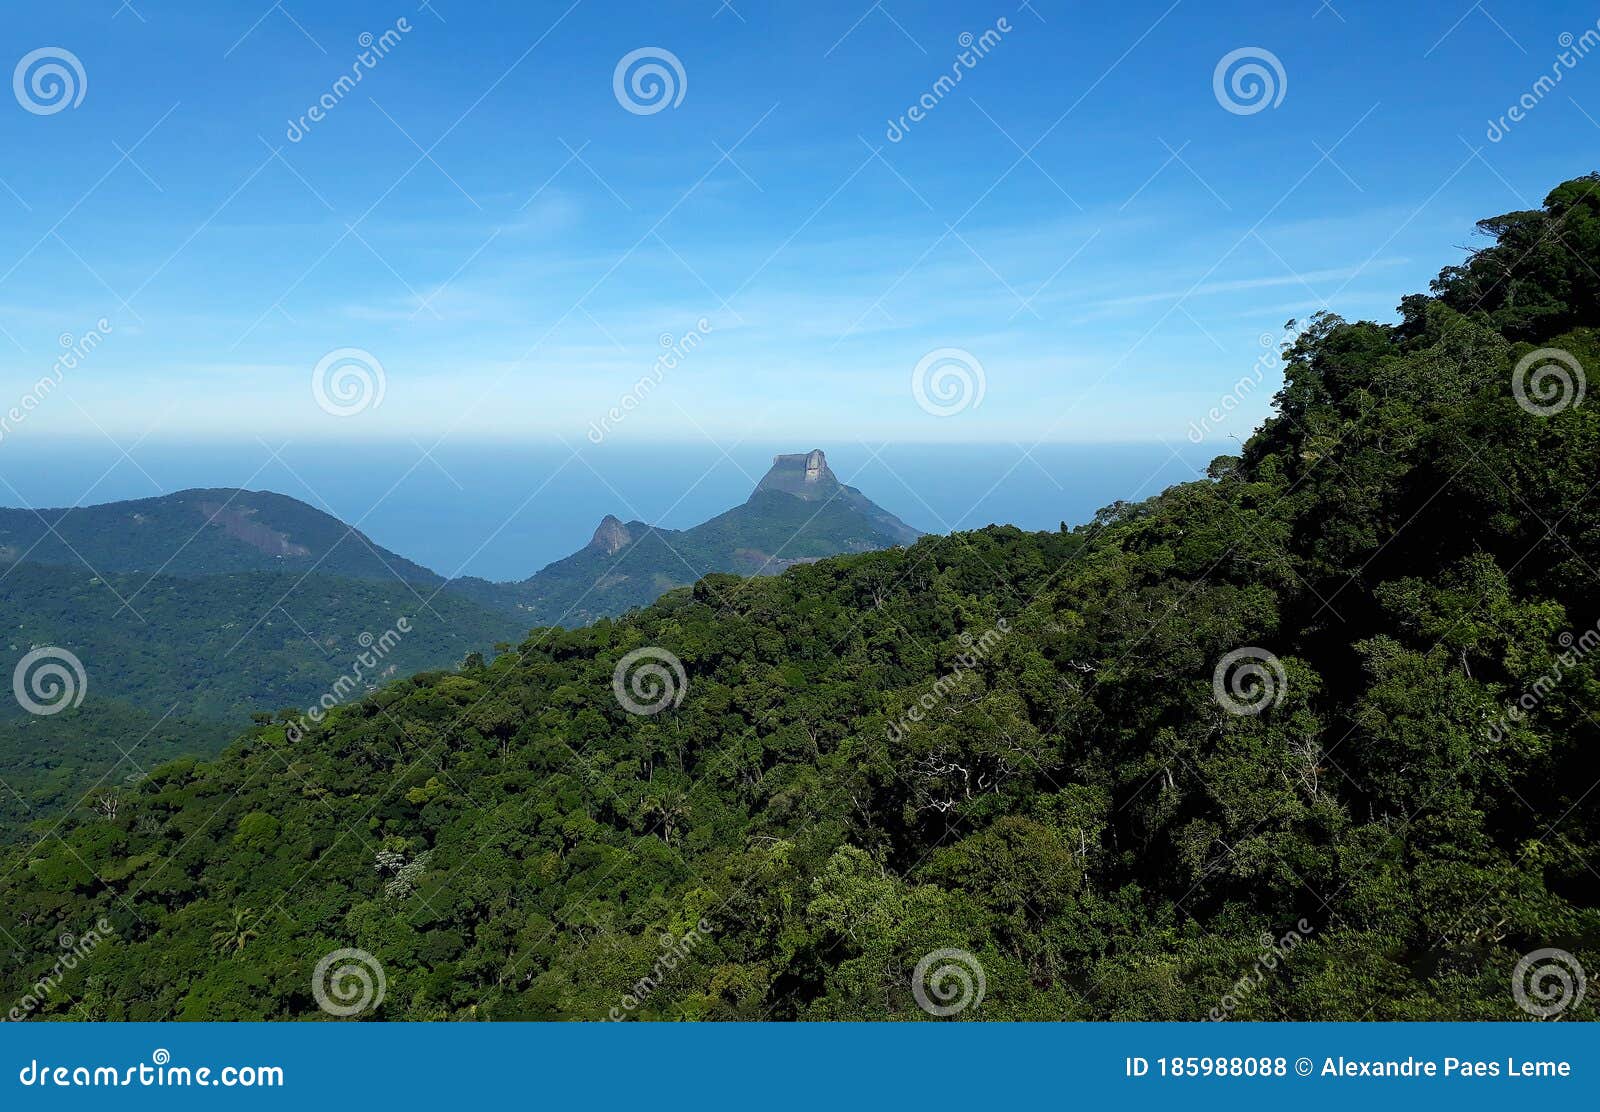 top view of pico do bico do papagaio